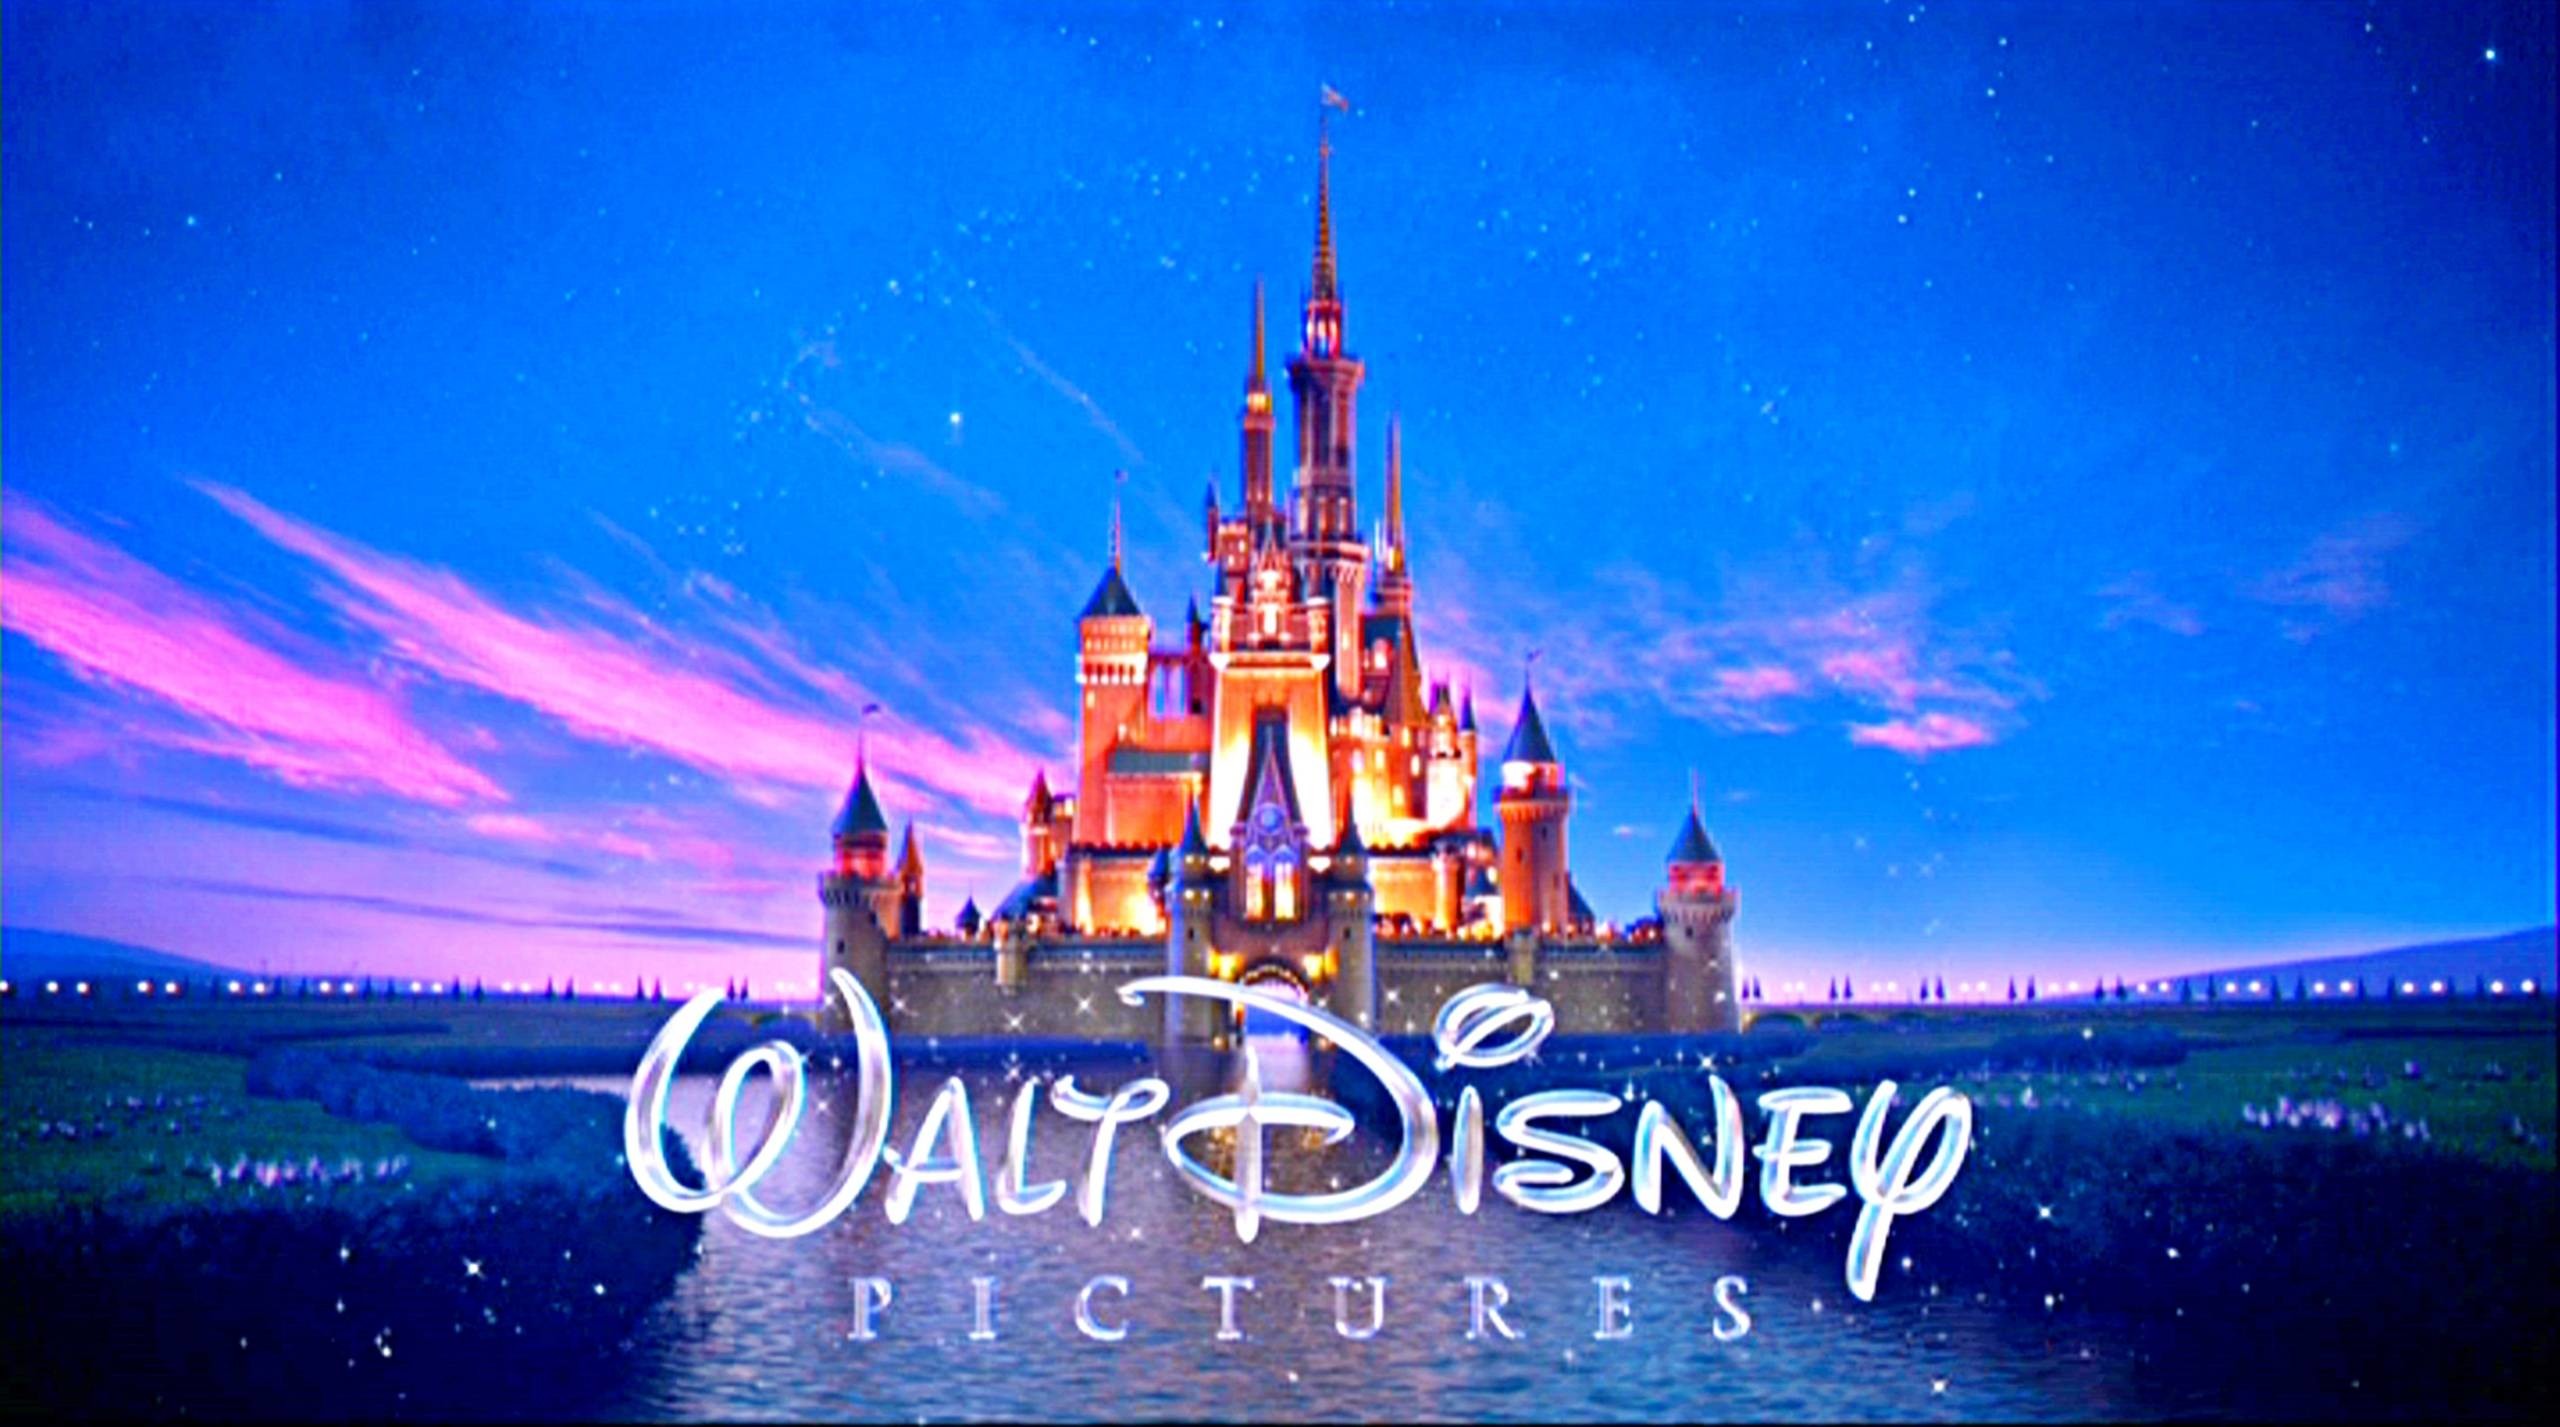 2560x1427 Walt Disney Pictures Wallpapers (48 Wallpapers)